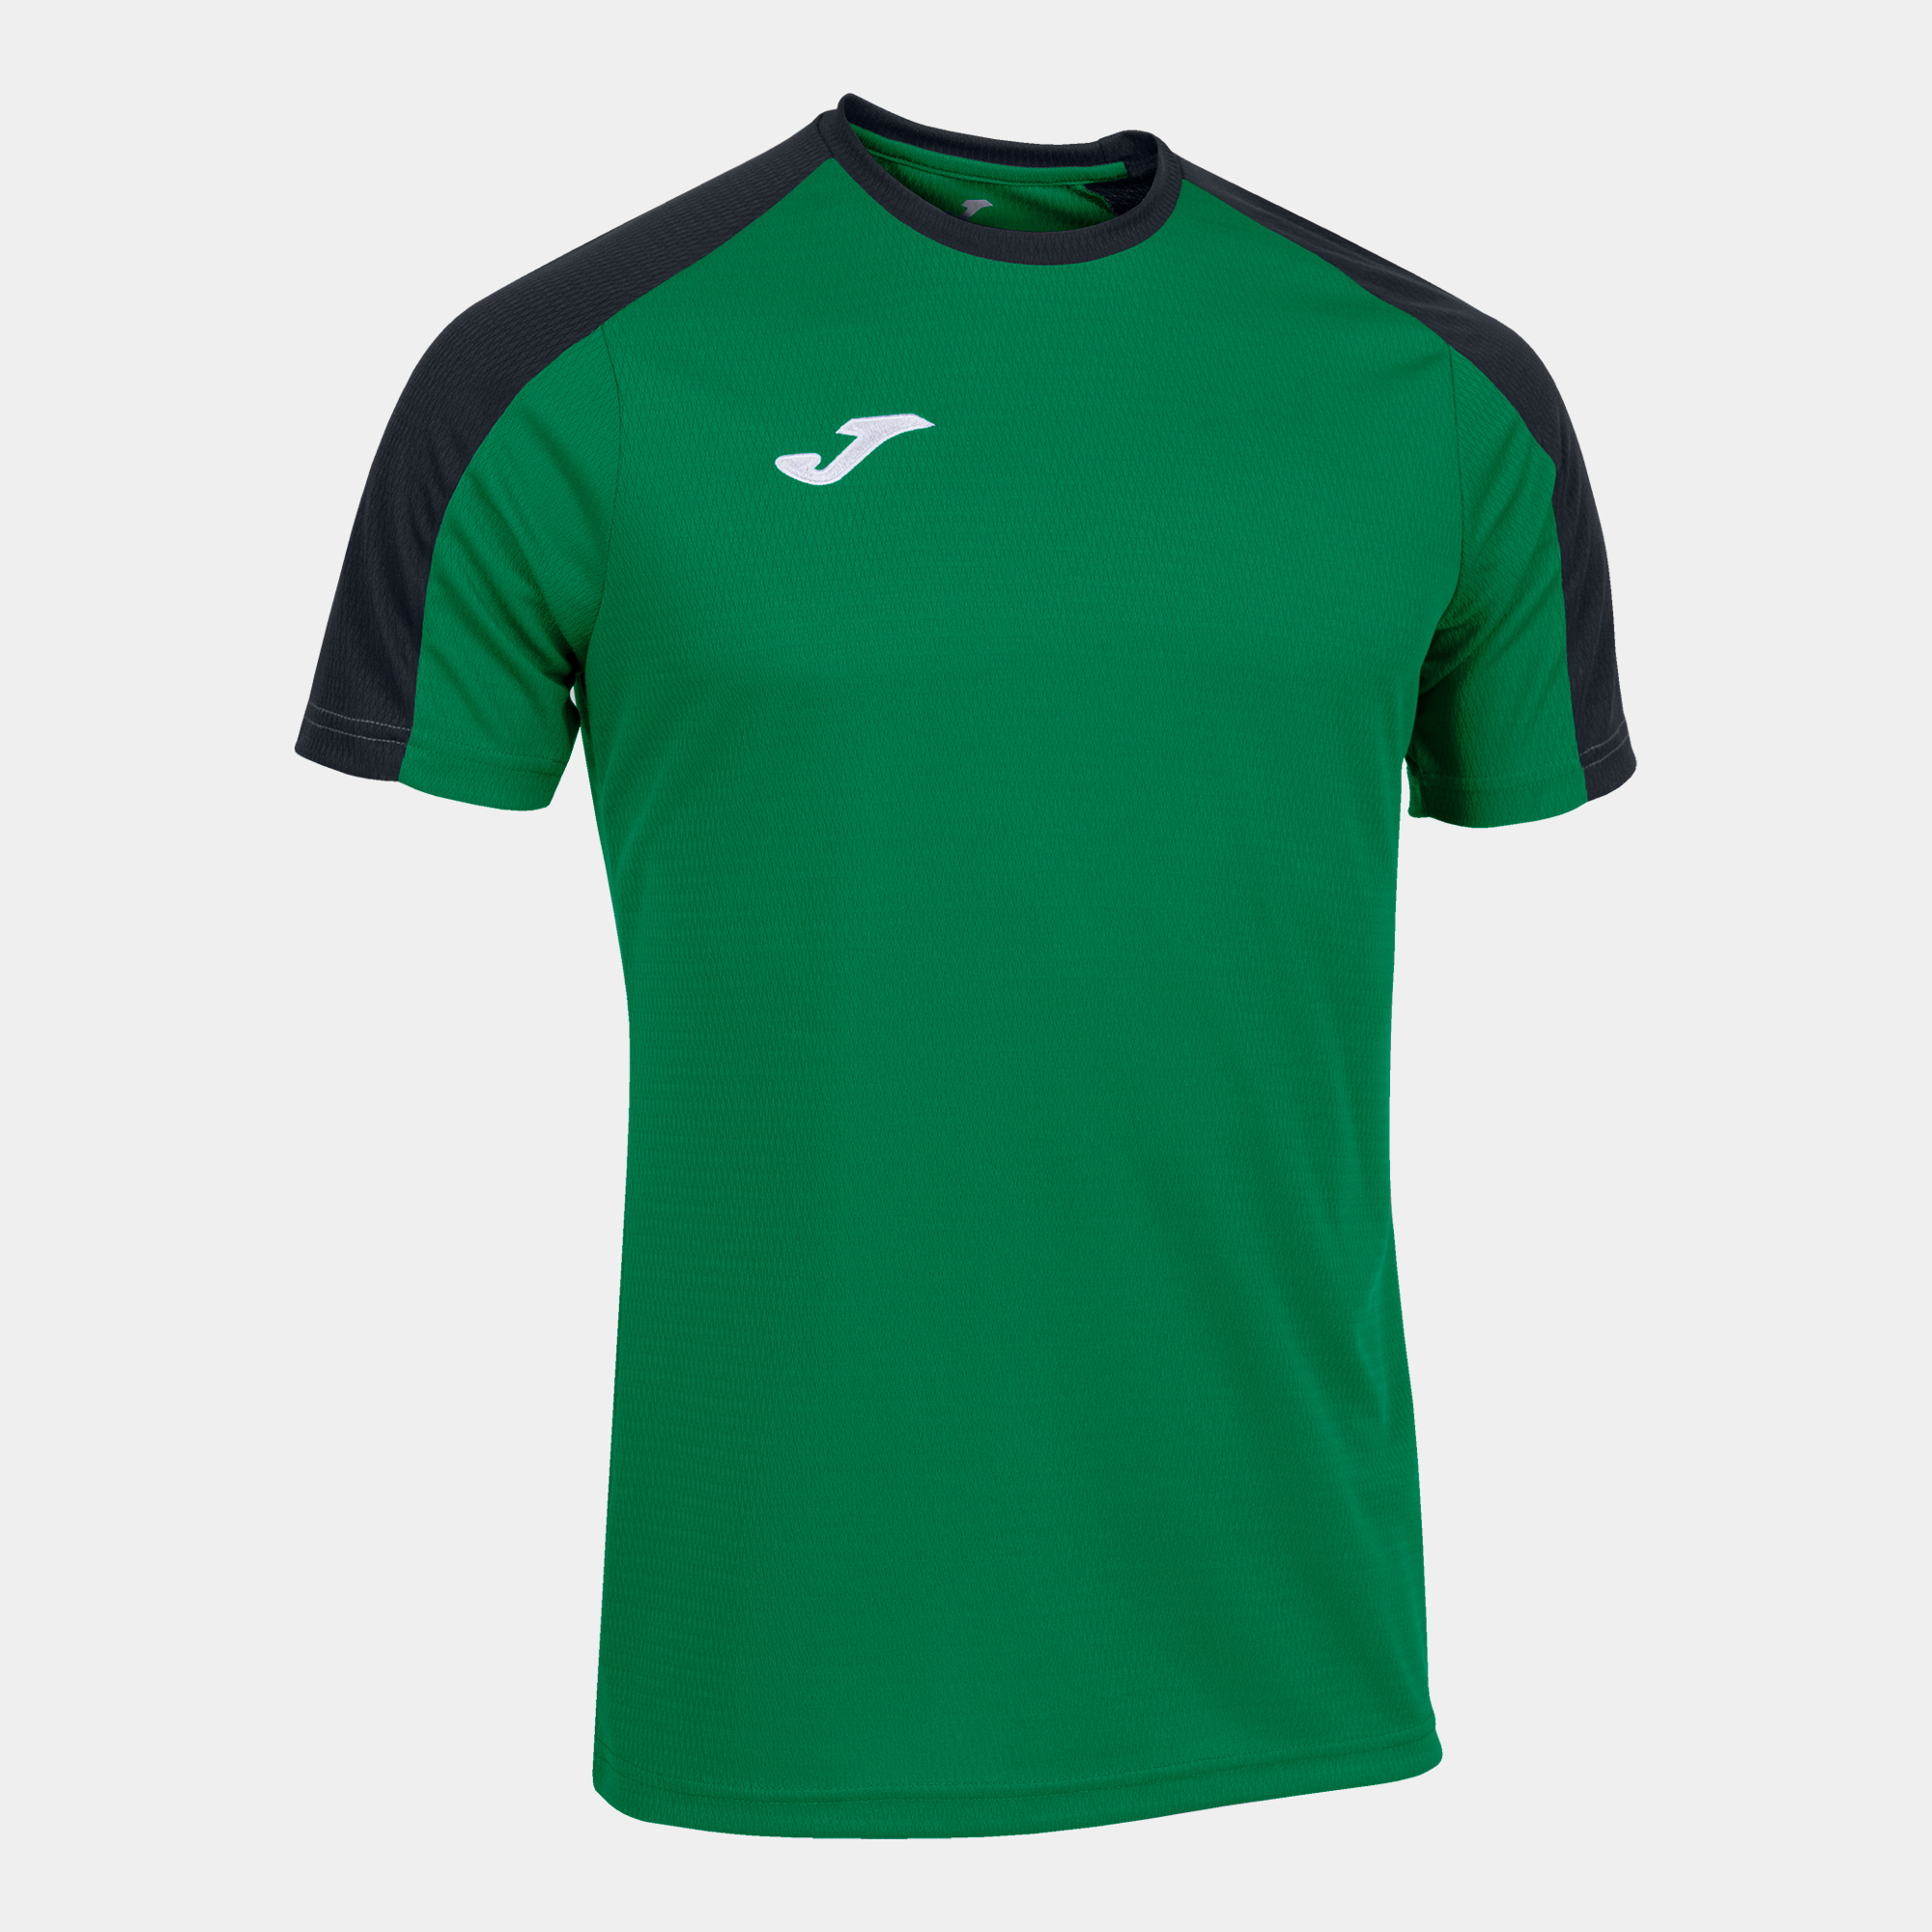 Raramente único estilo Camisetas de futbol verde | Sprinter